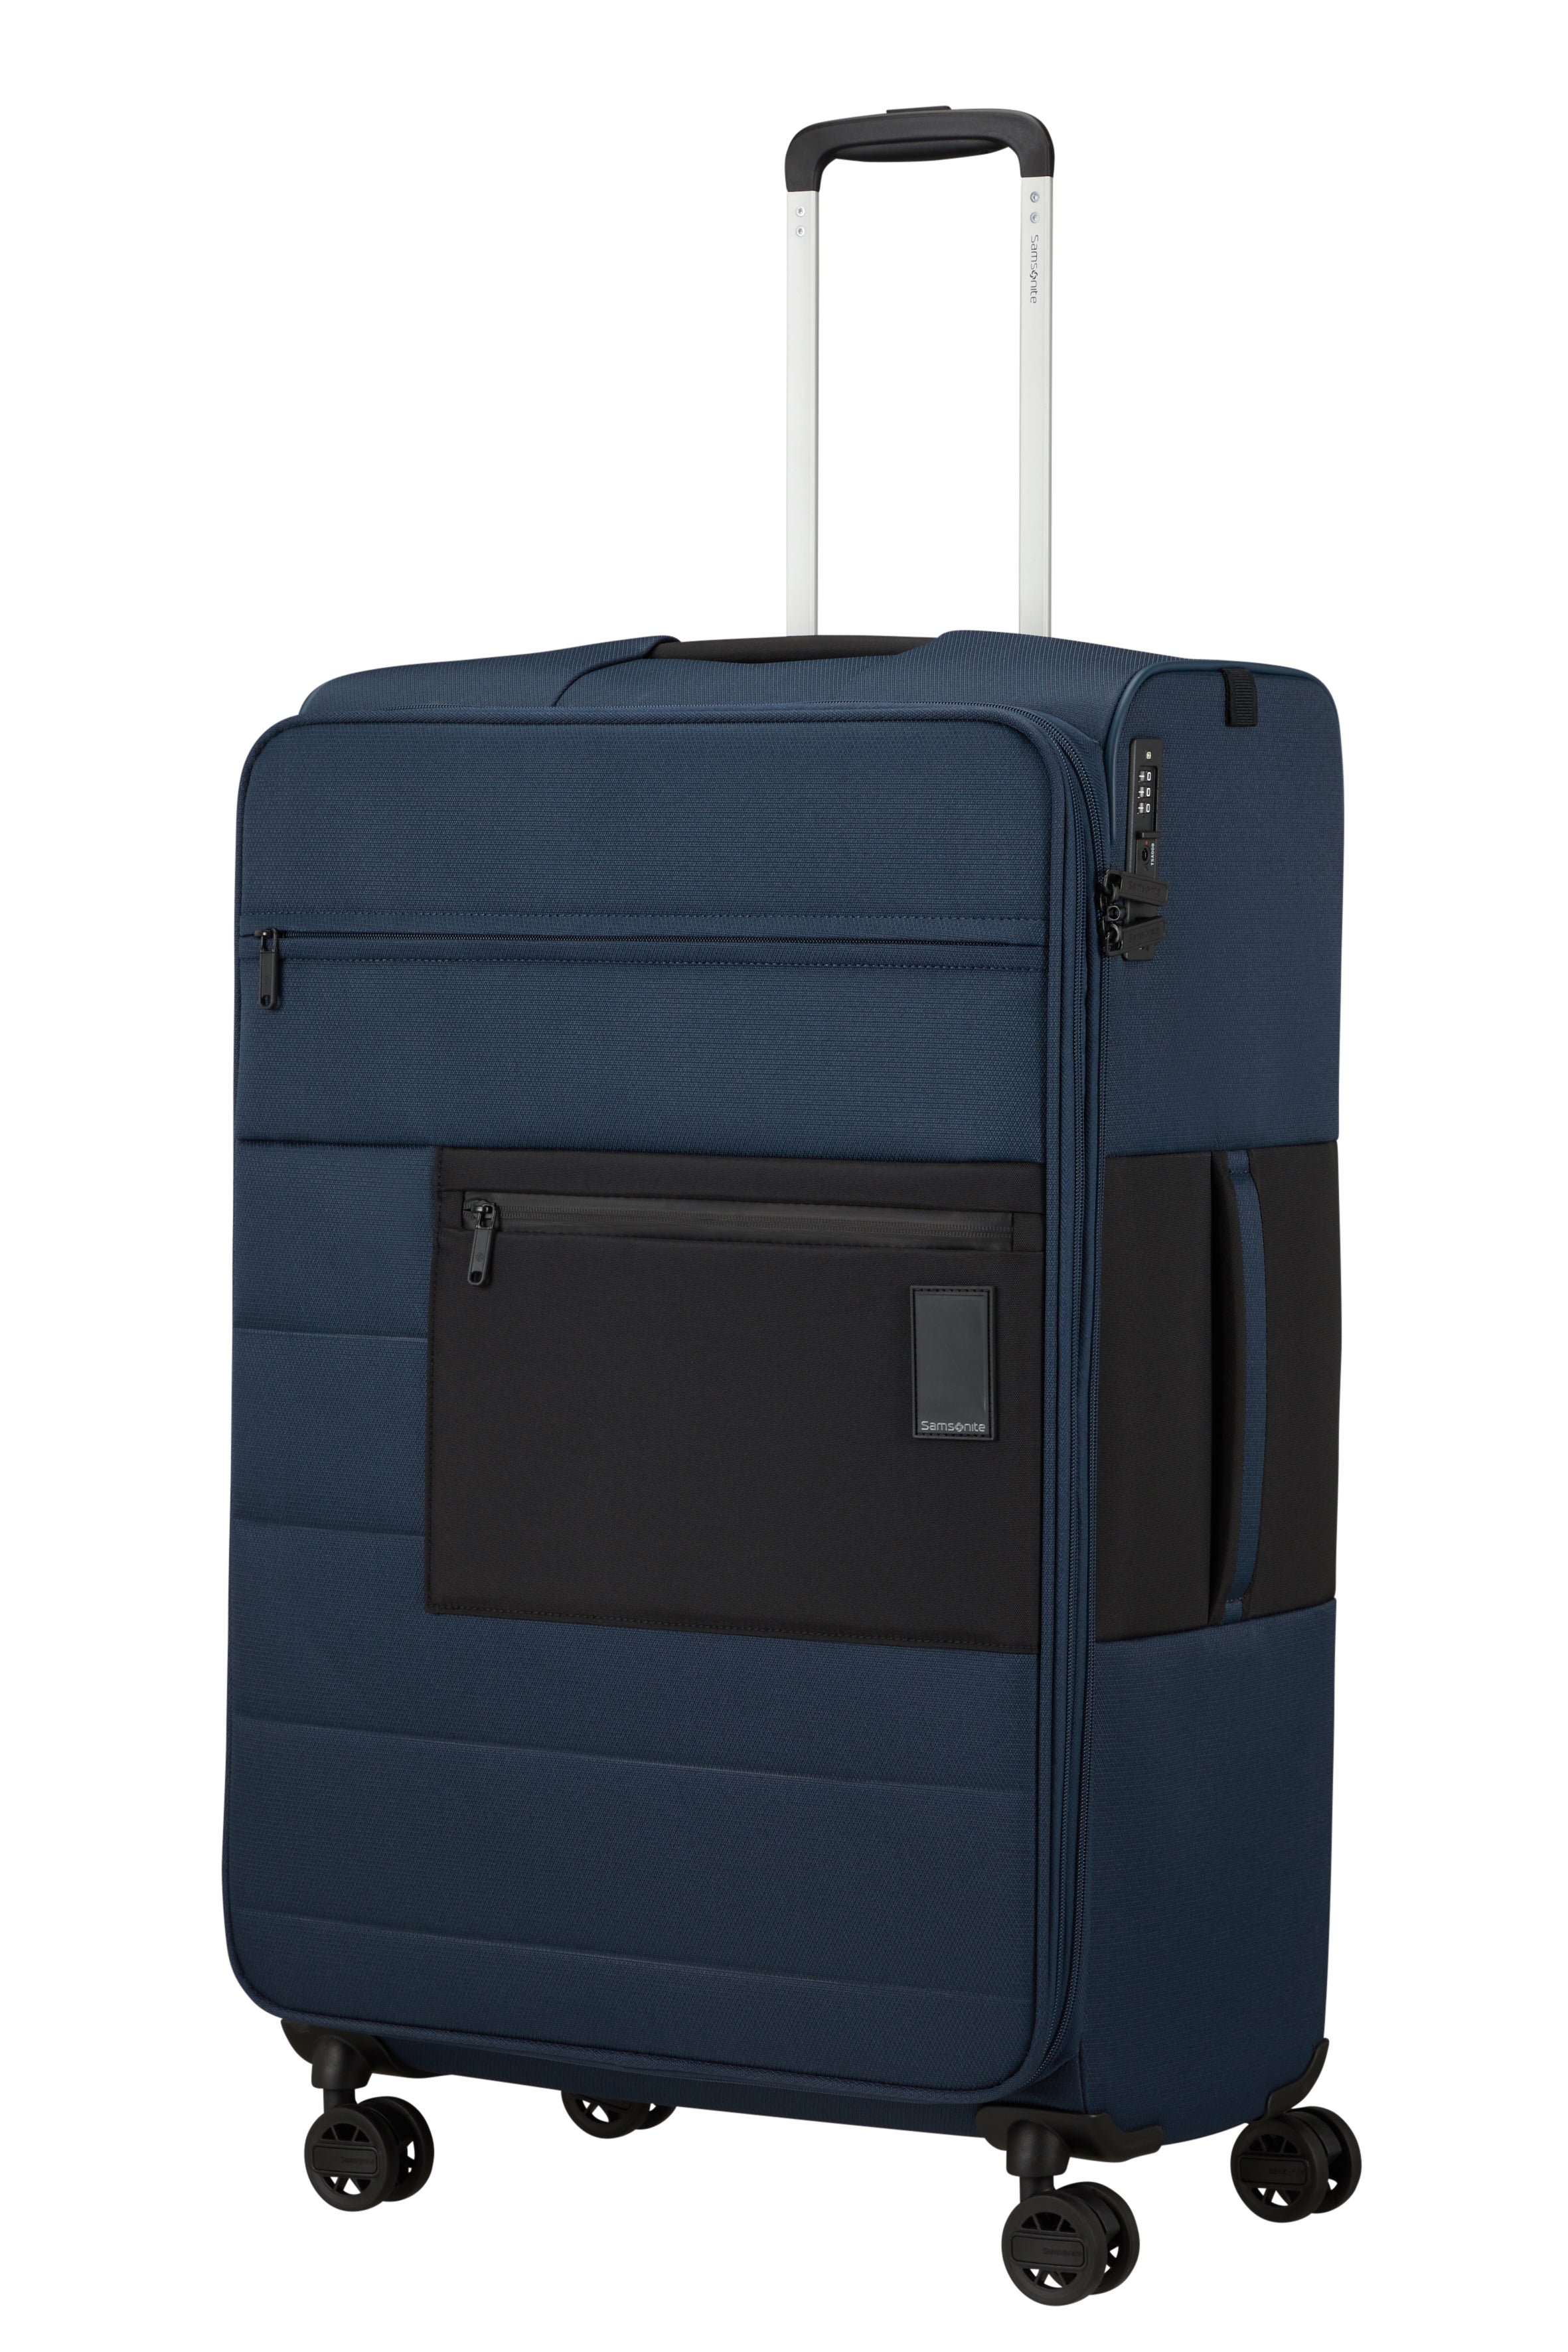 Samsonite Vaycay 4-Wheel 77cm Large Expandable Recycled Suitcase